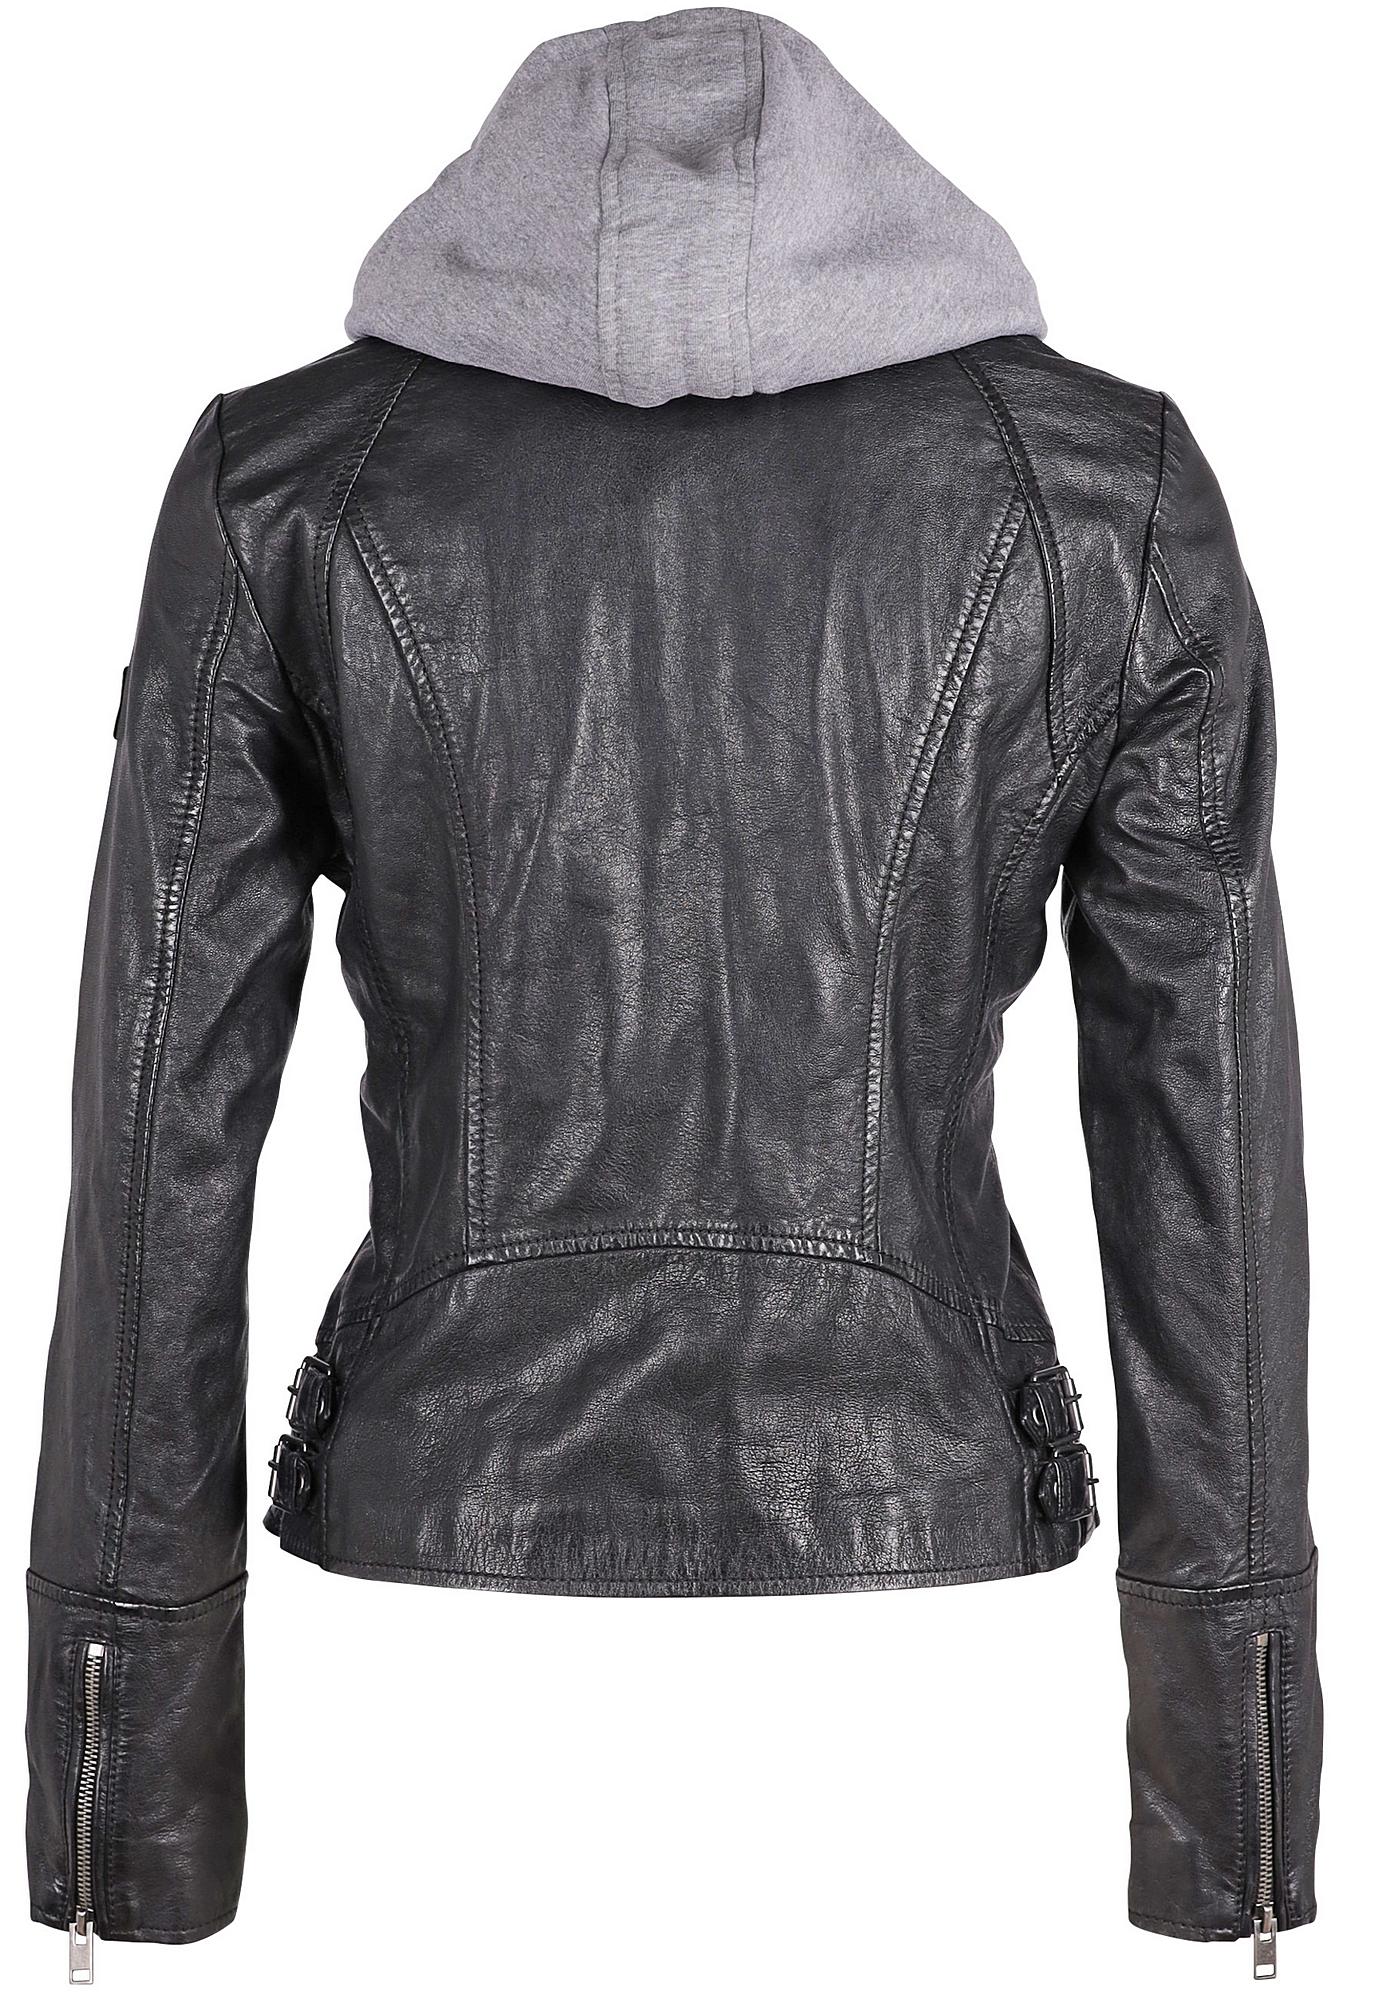 Nola RF Leather Jacket, mauritiusleather – Black